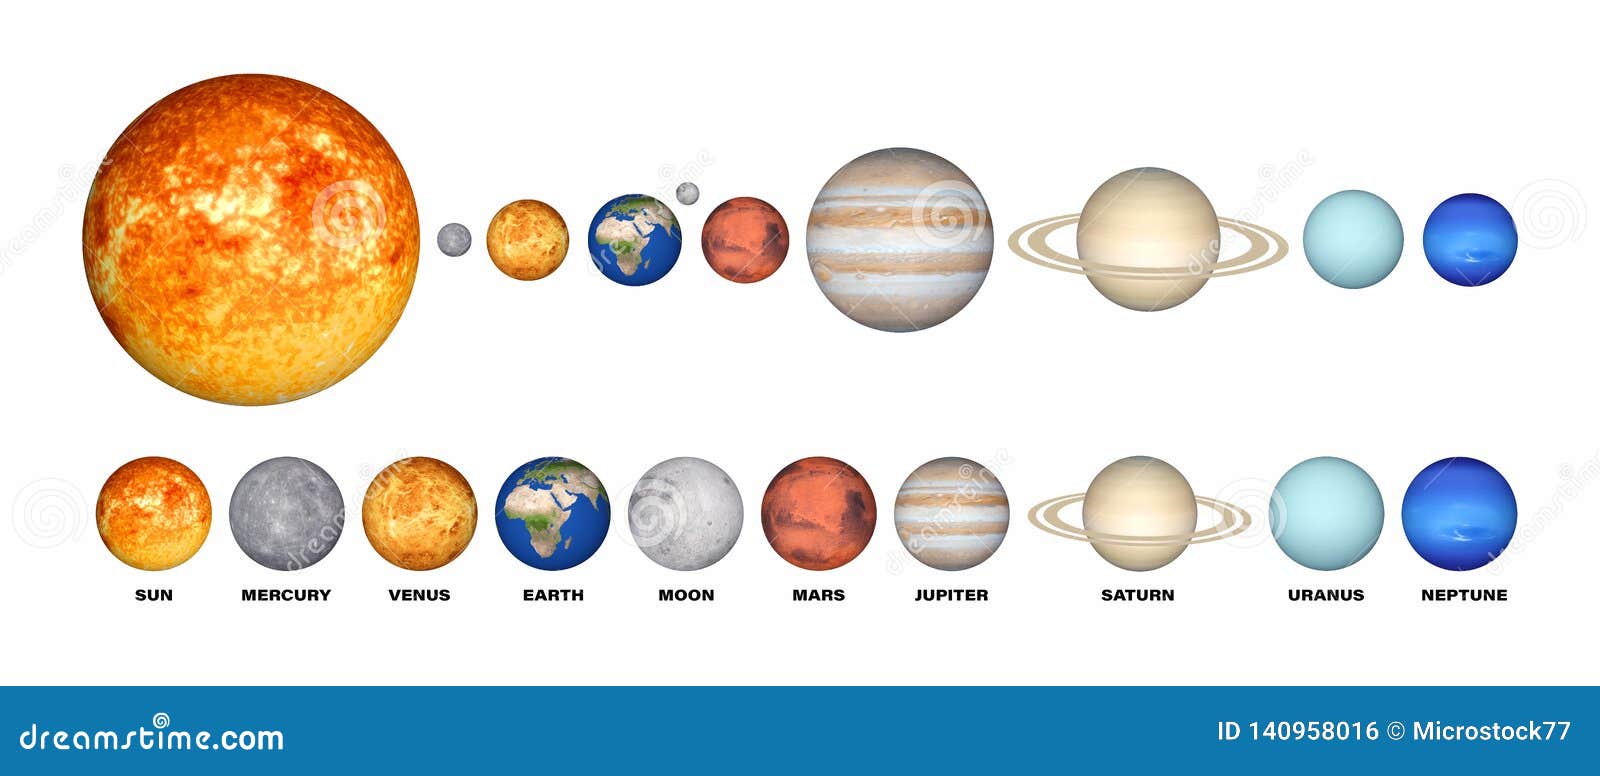 Соотношение планет солнечной системы по размеру